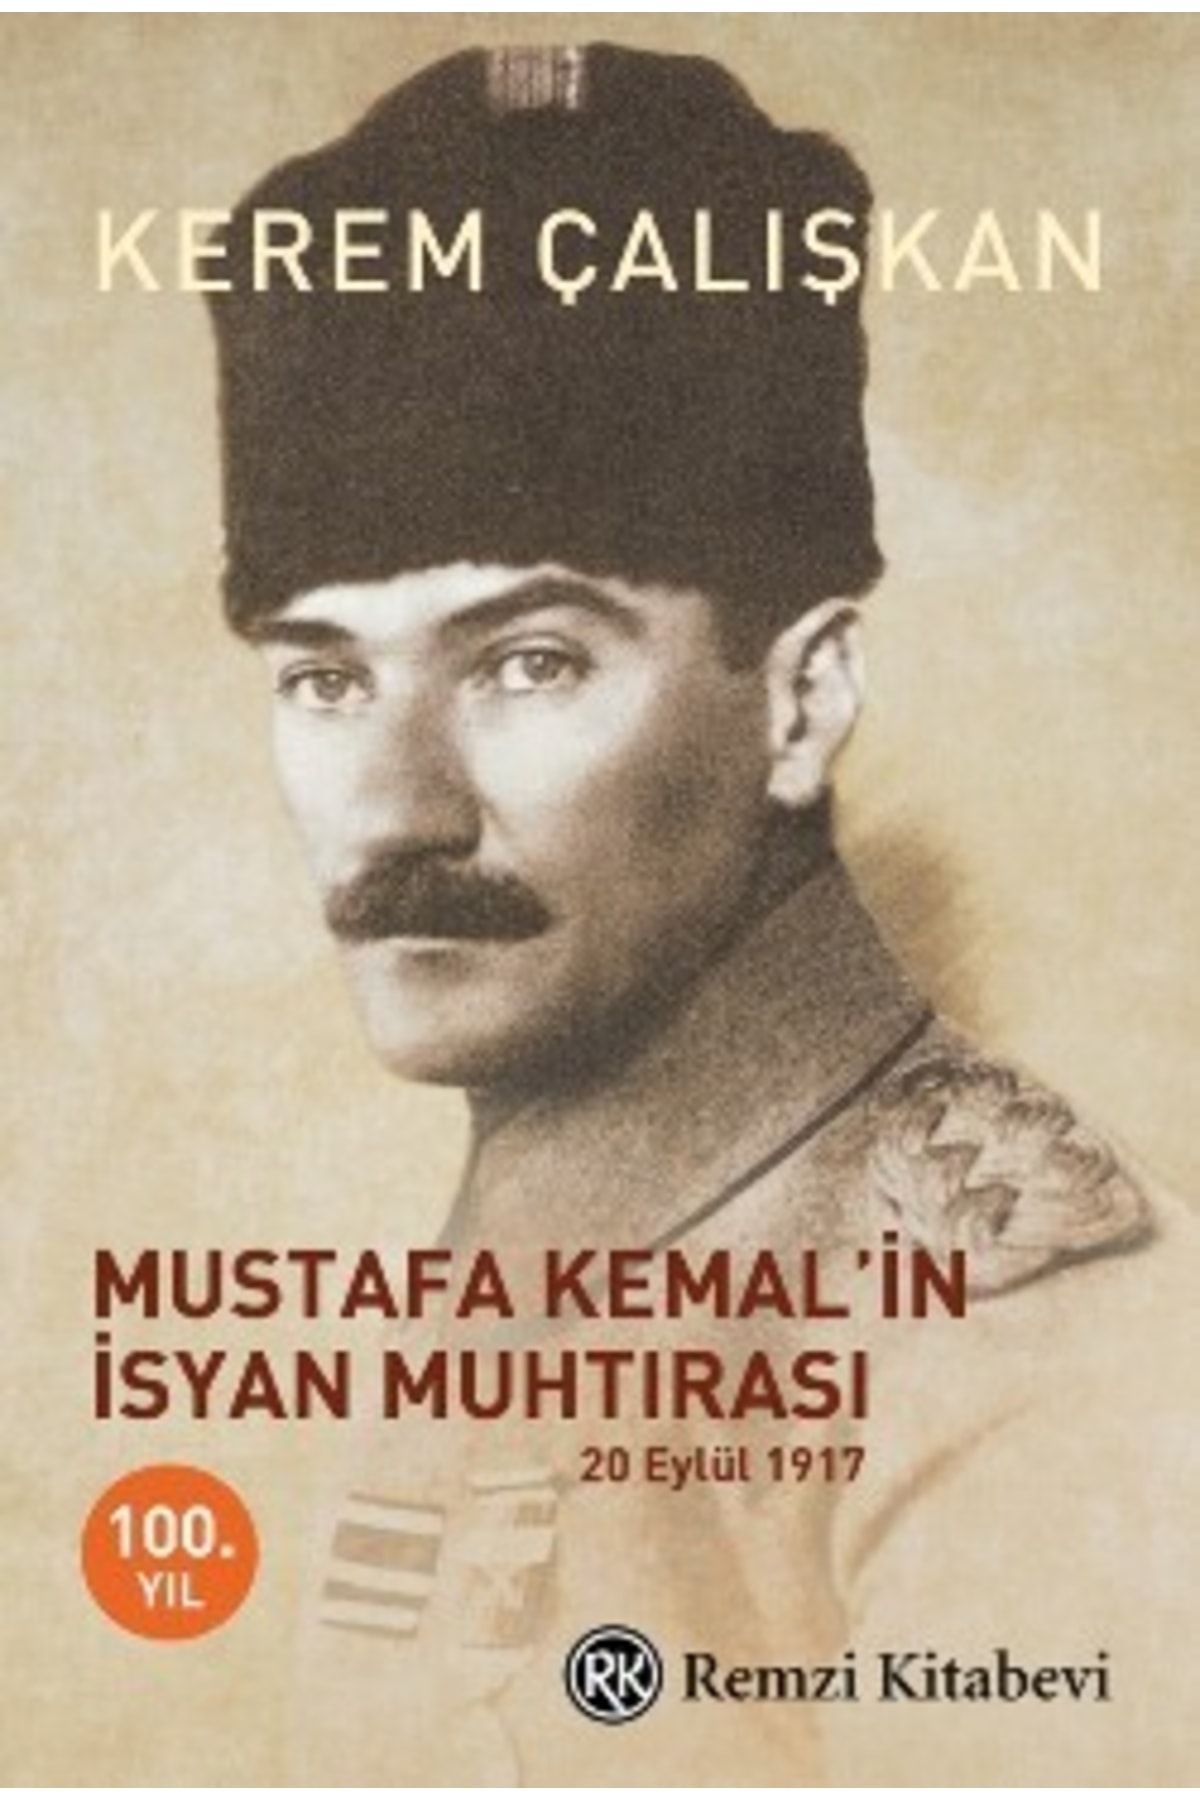 Remzi Kitabevi Mustafa Kemal’in Isyan Muhtırası Kerem Çalışkan